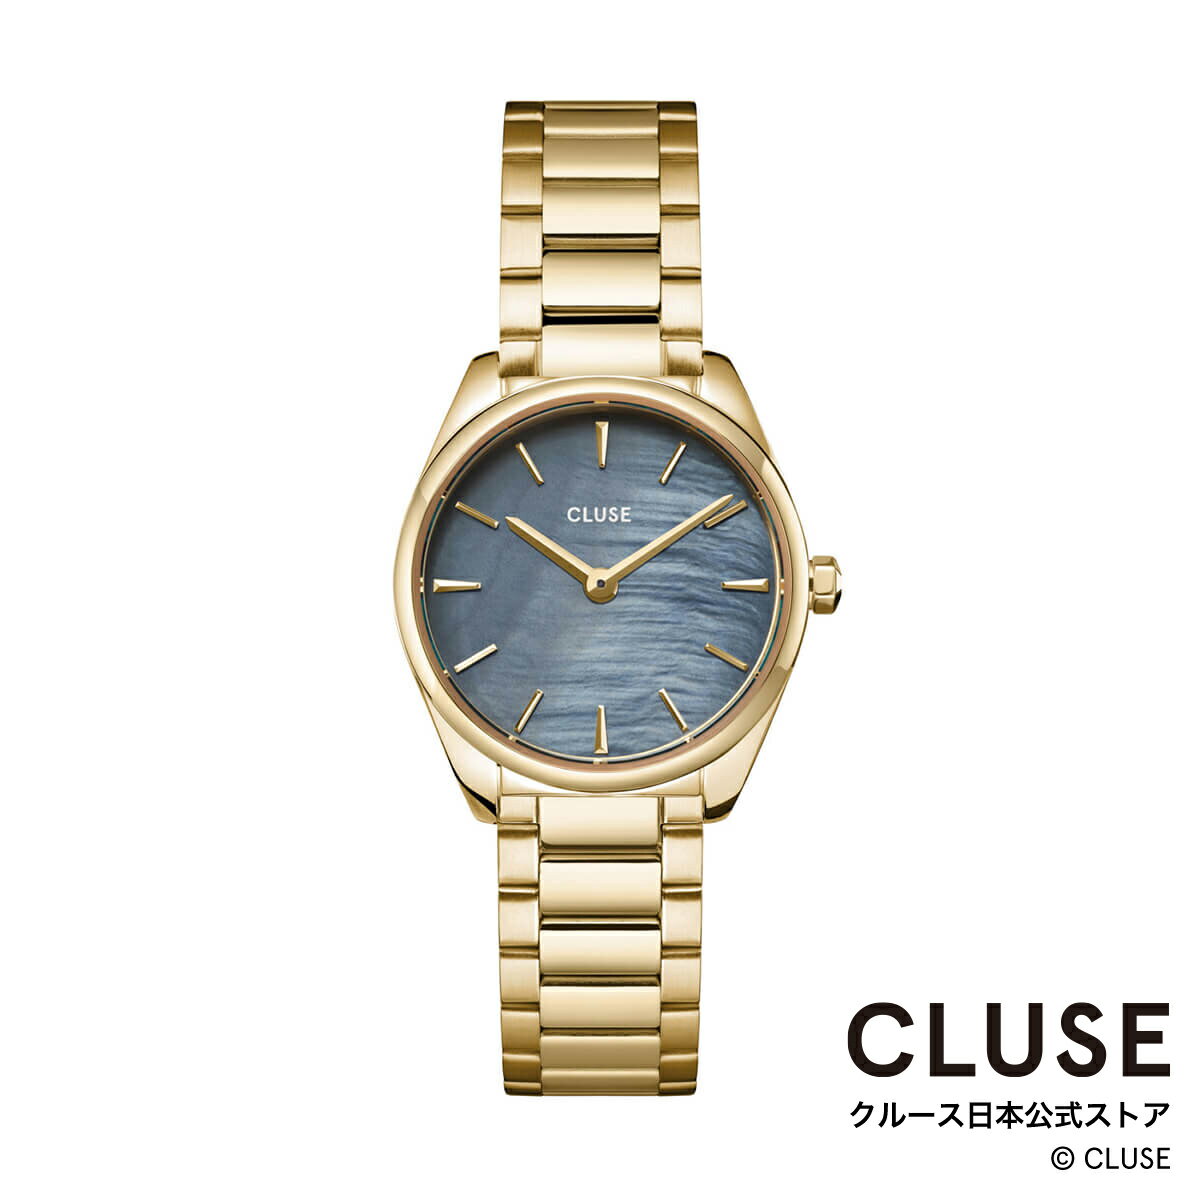 クルース ビジネス腕時計 レディース クルース CLUSE 日本公式ストア フェローチェミニ ブルーパール ゴールドステンレスベルト レディース 女性 腕時計 時計 防水 クォーツ